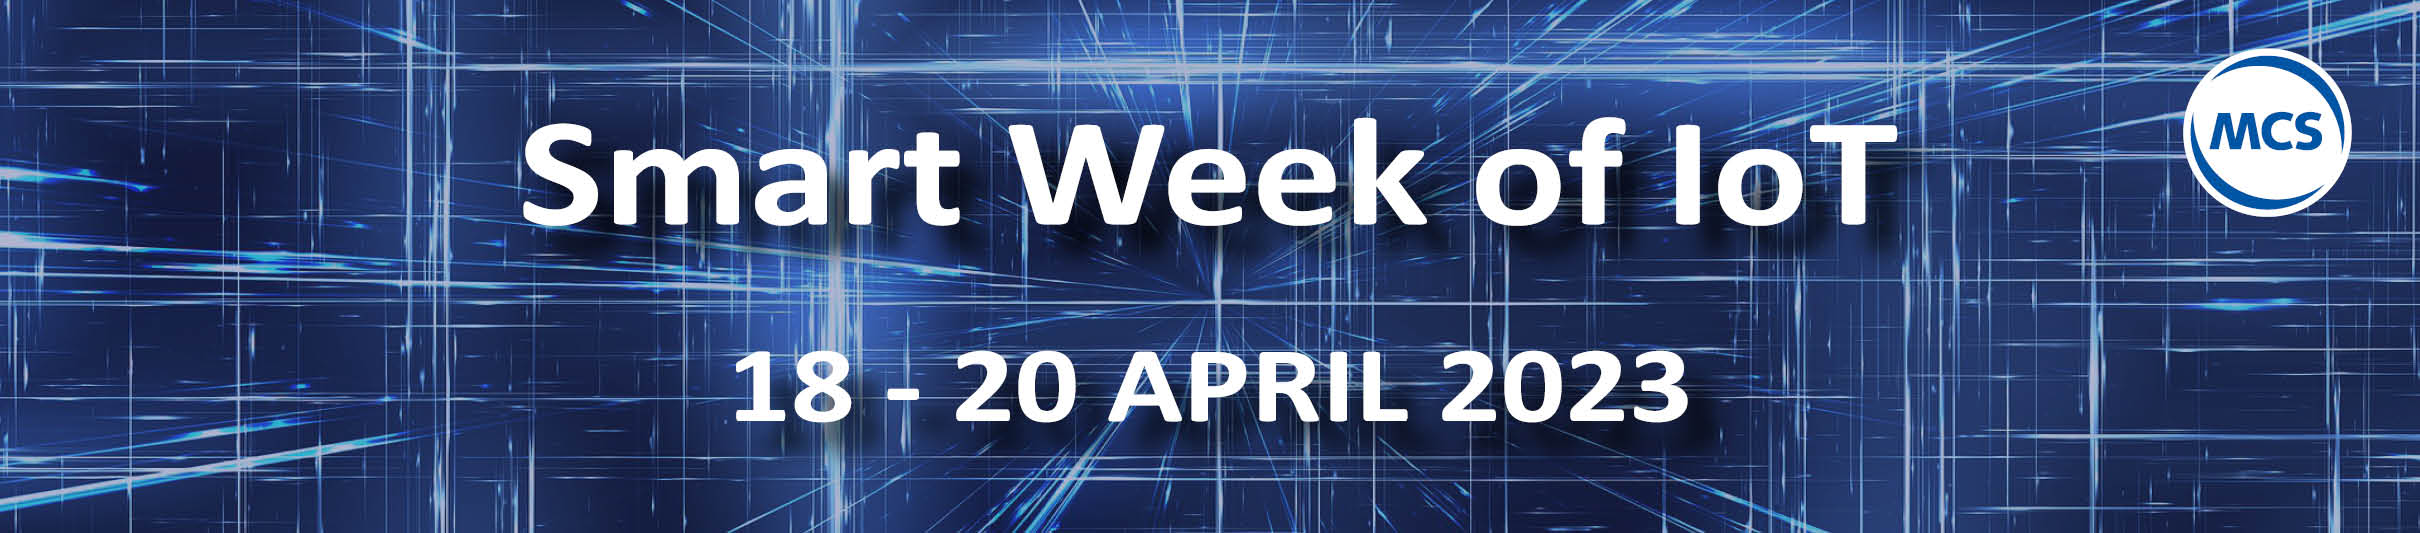 MCS Smart Week of IoT 2023 van 18 tot en met 20 april 2023